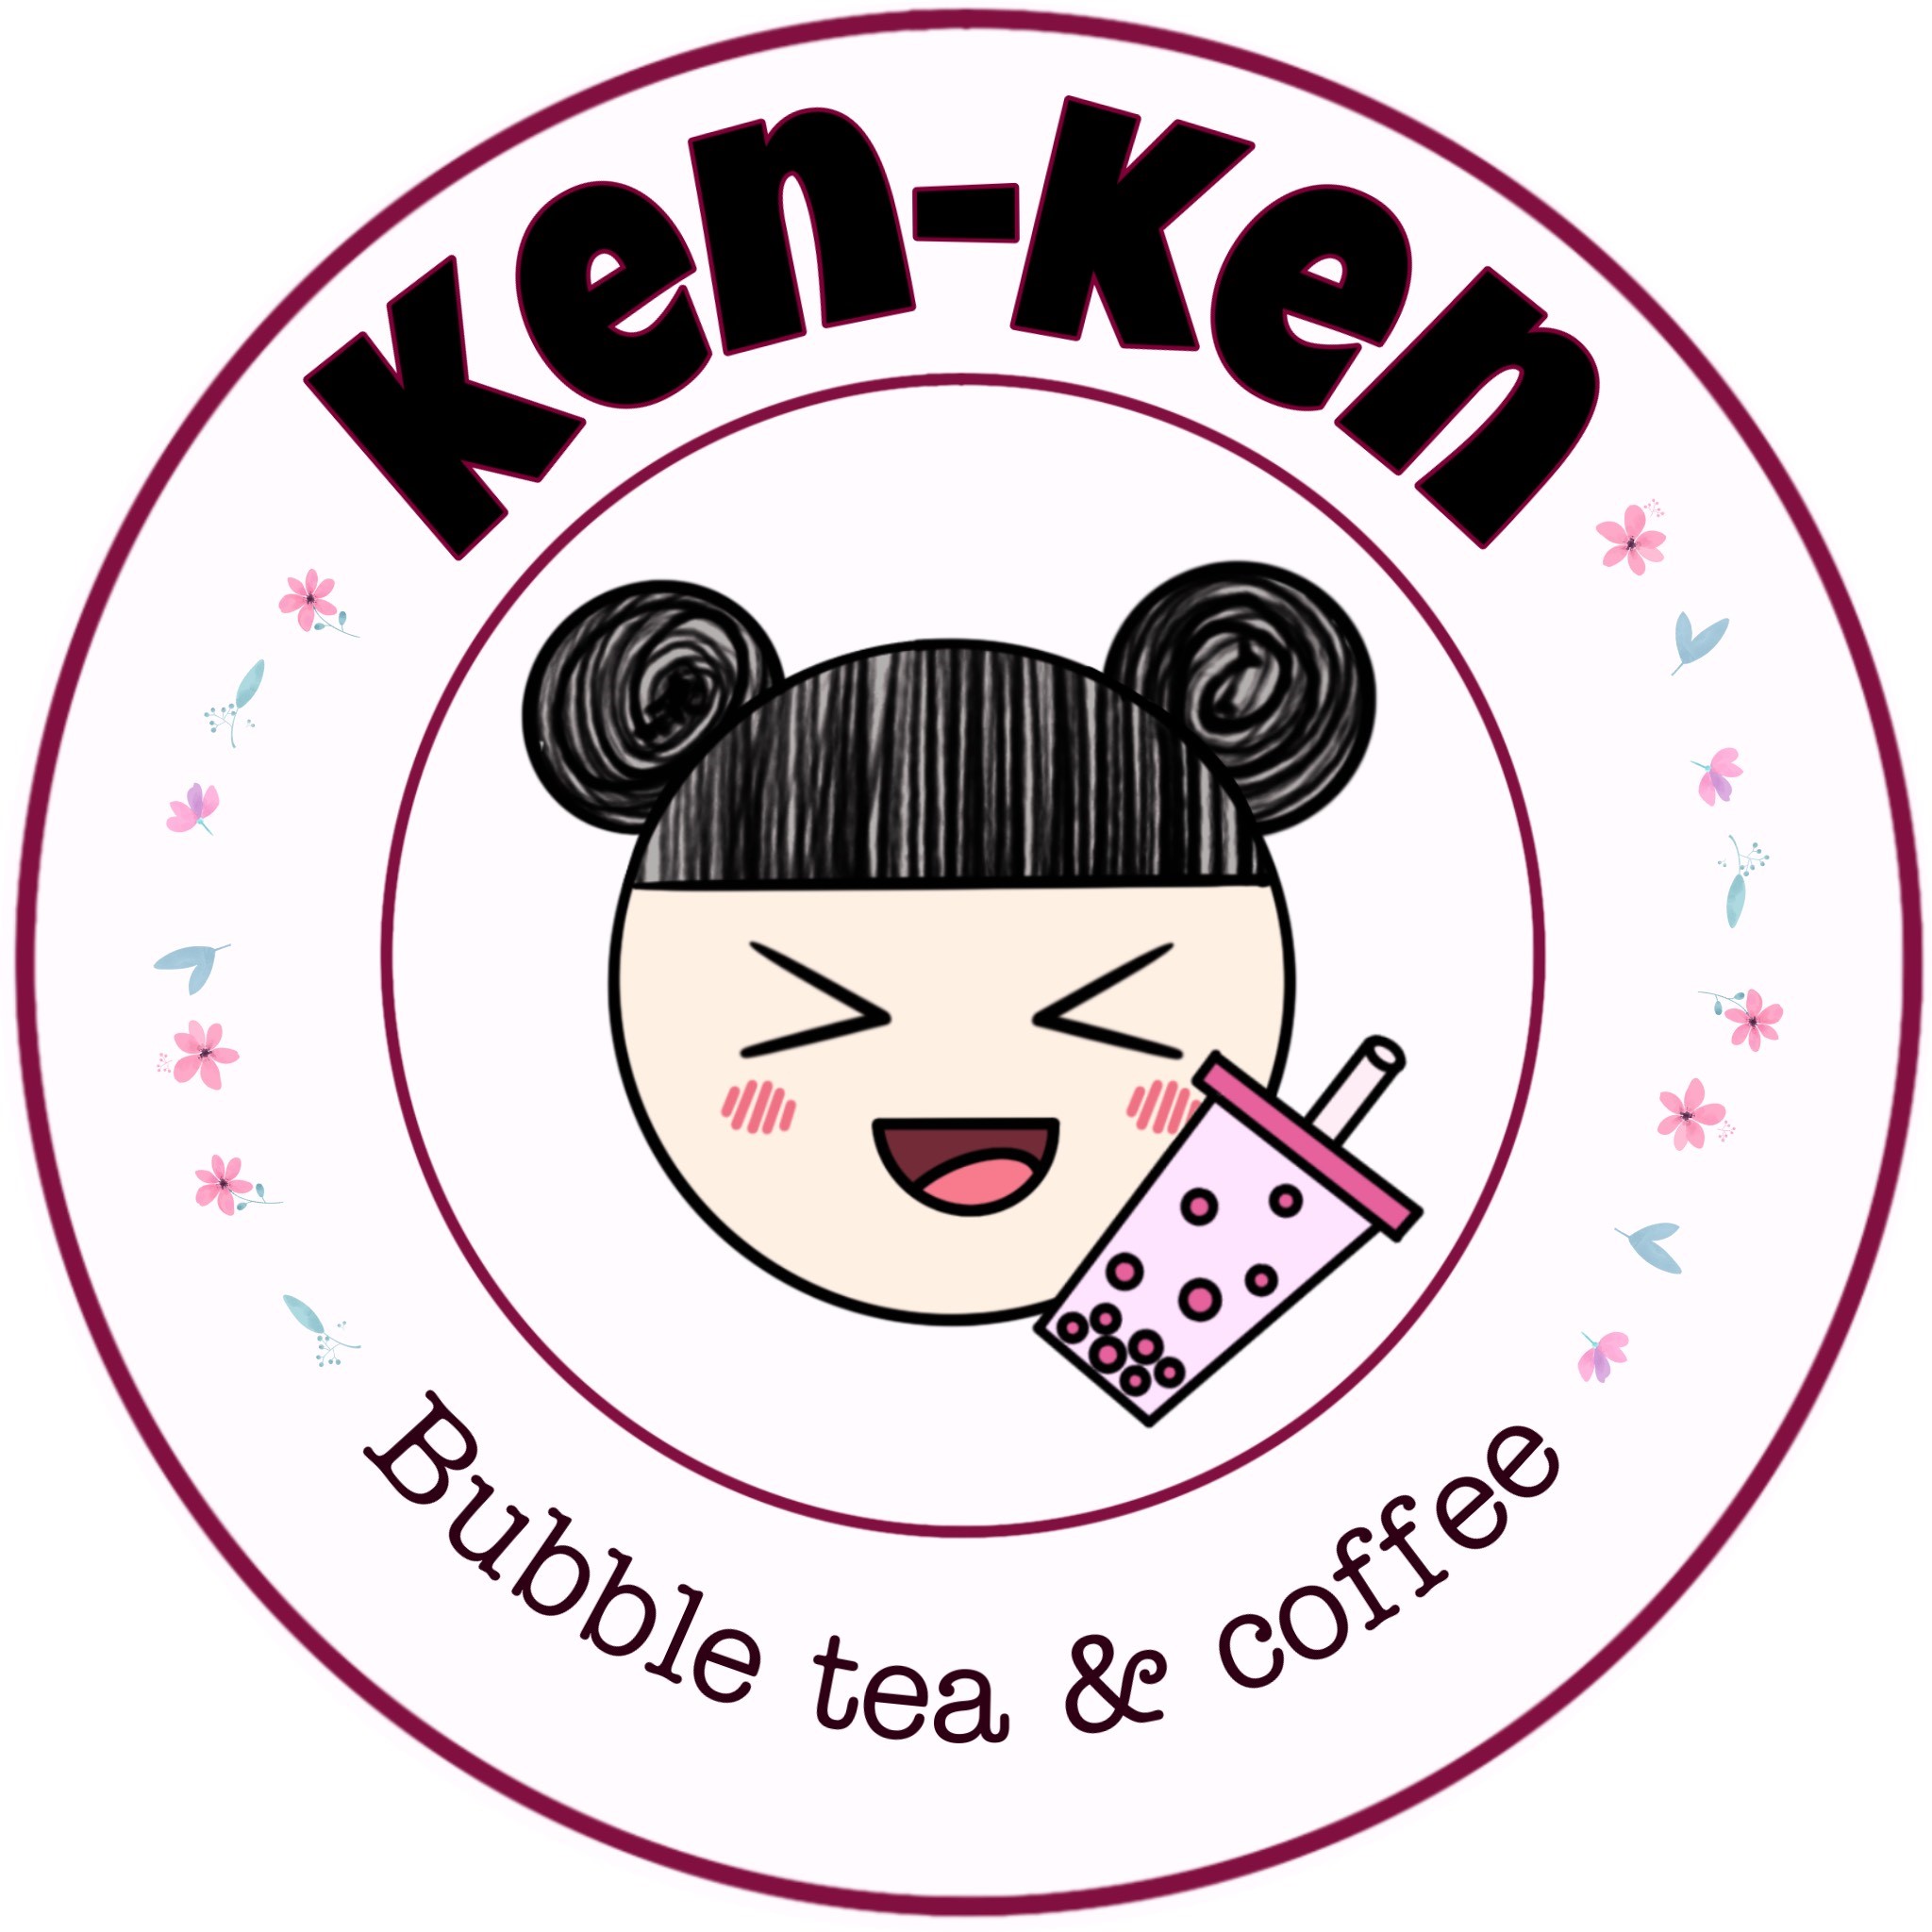 Ken-Ken Bubble Tea